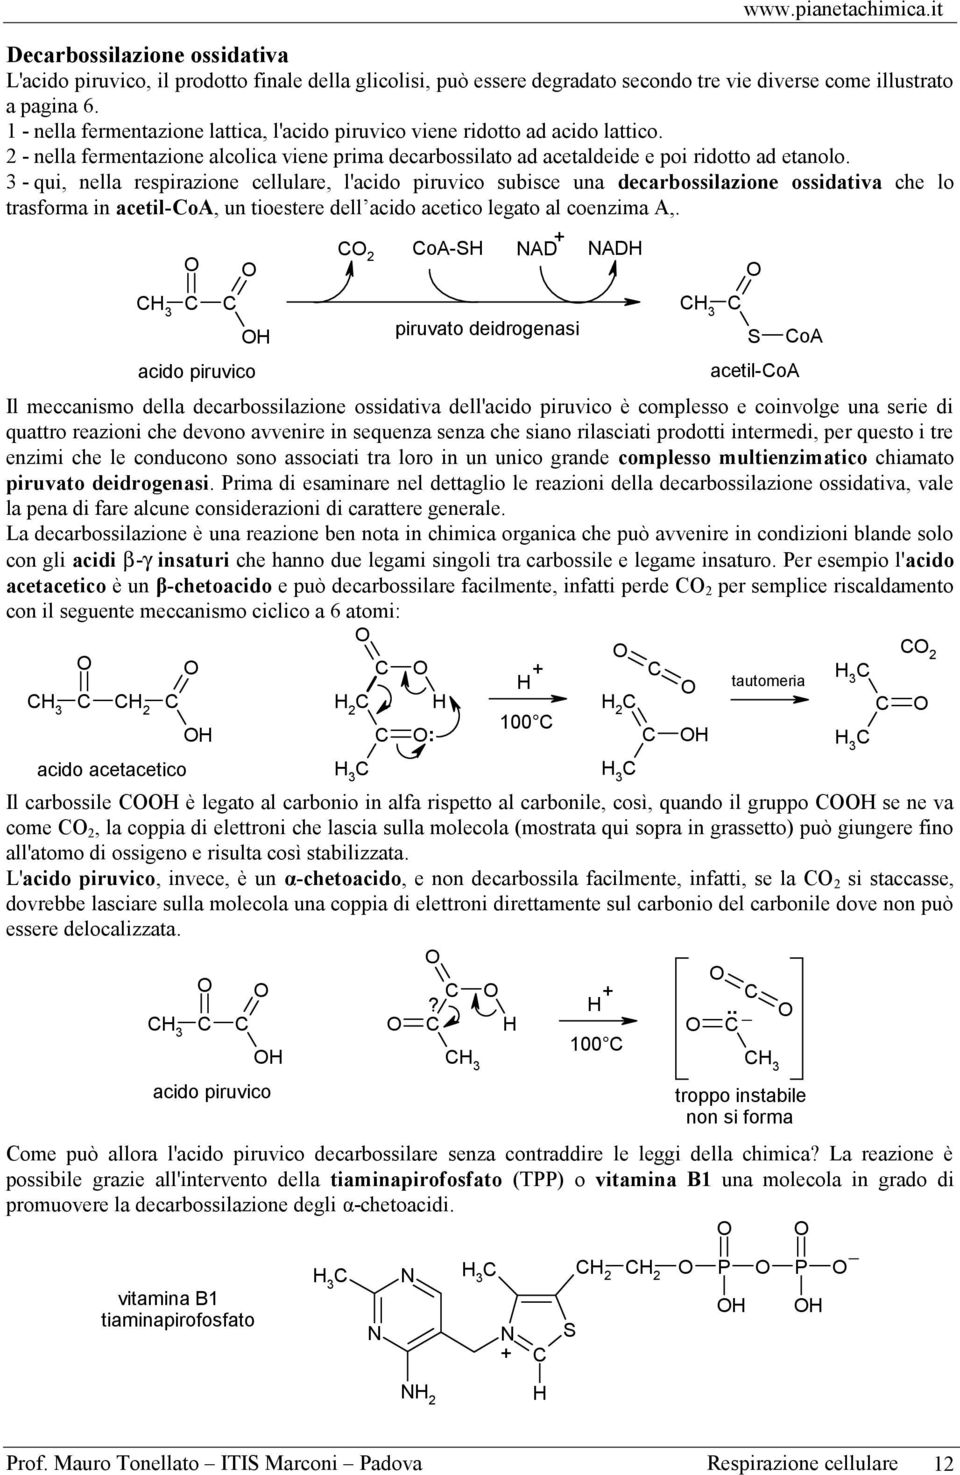 subisce una decarbossilazione ossidativa che lo trasforma in acetil-oa, un tioestere dell acido acetico legato al coenzima A, 3 acido piruvico 2 oa- AD AD piruvato deidrogenasi 3 acetil-oa Il